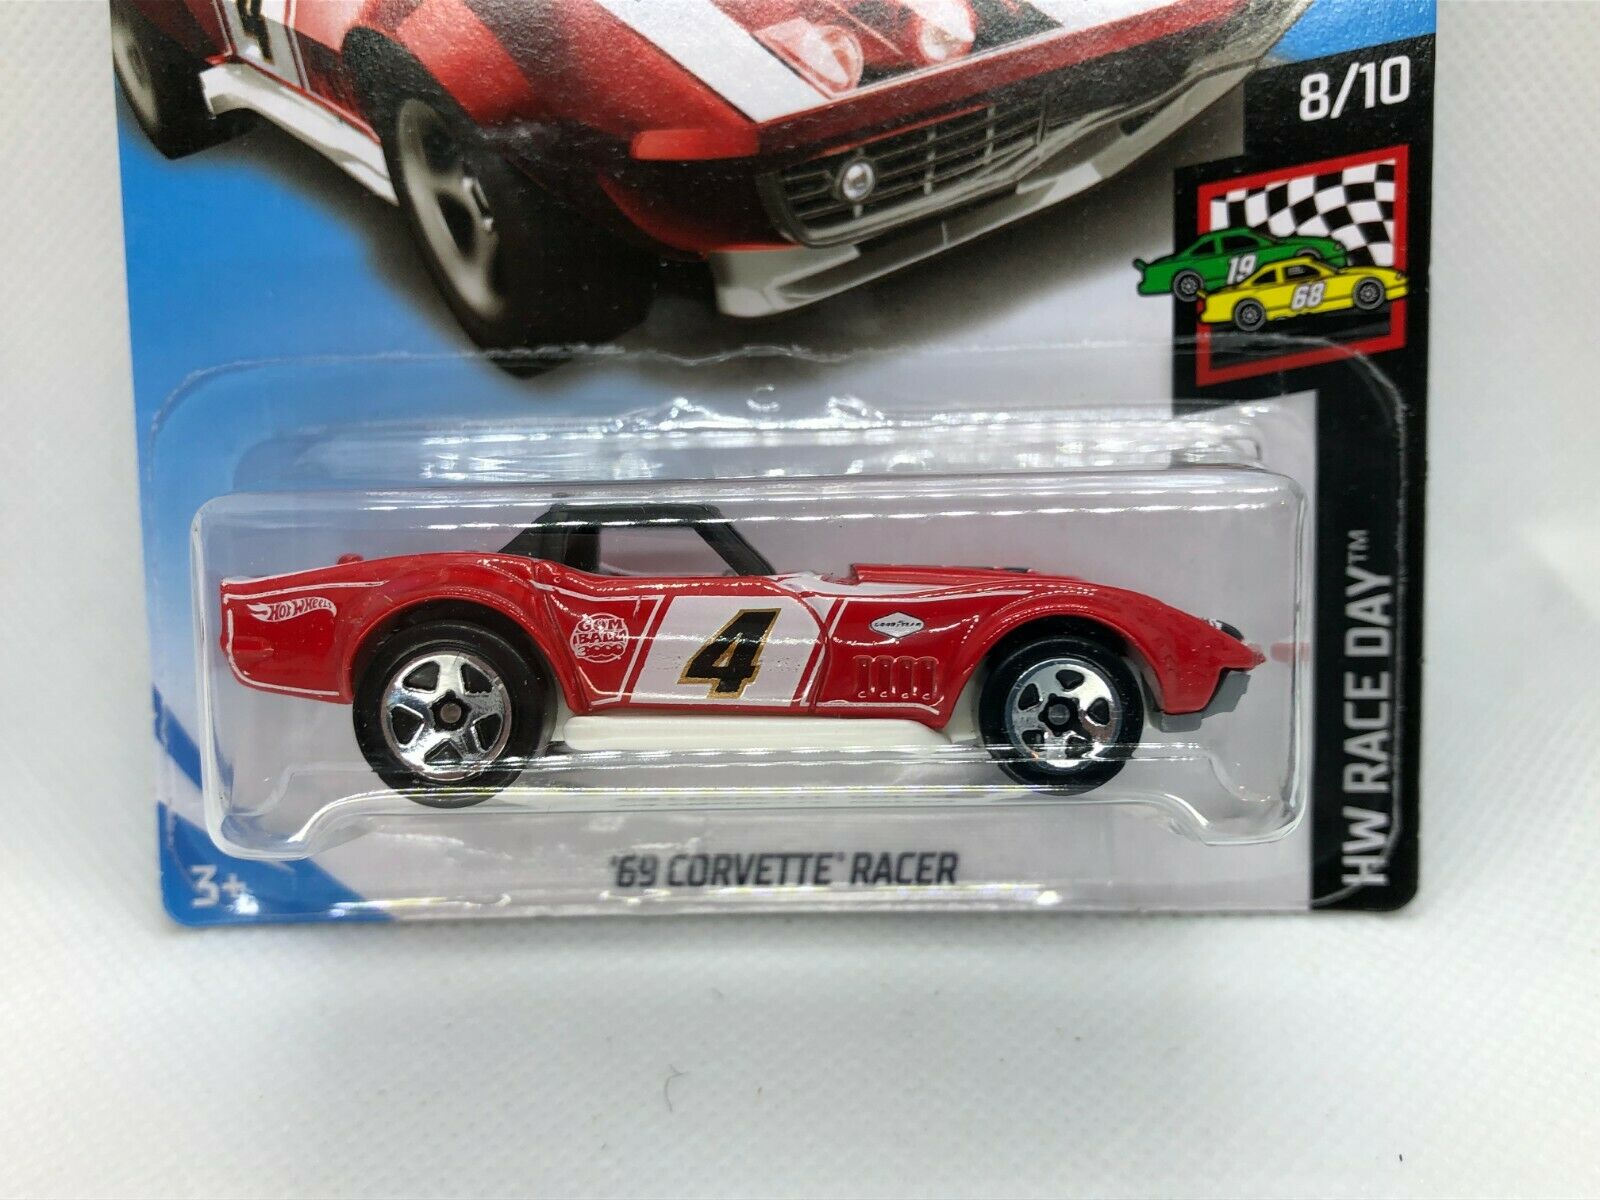 69 Corvette Racer